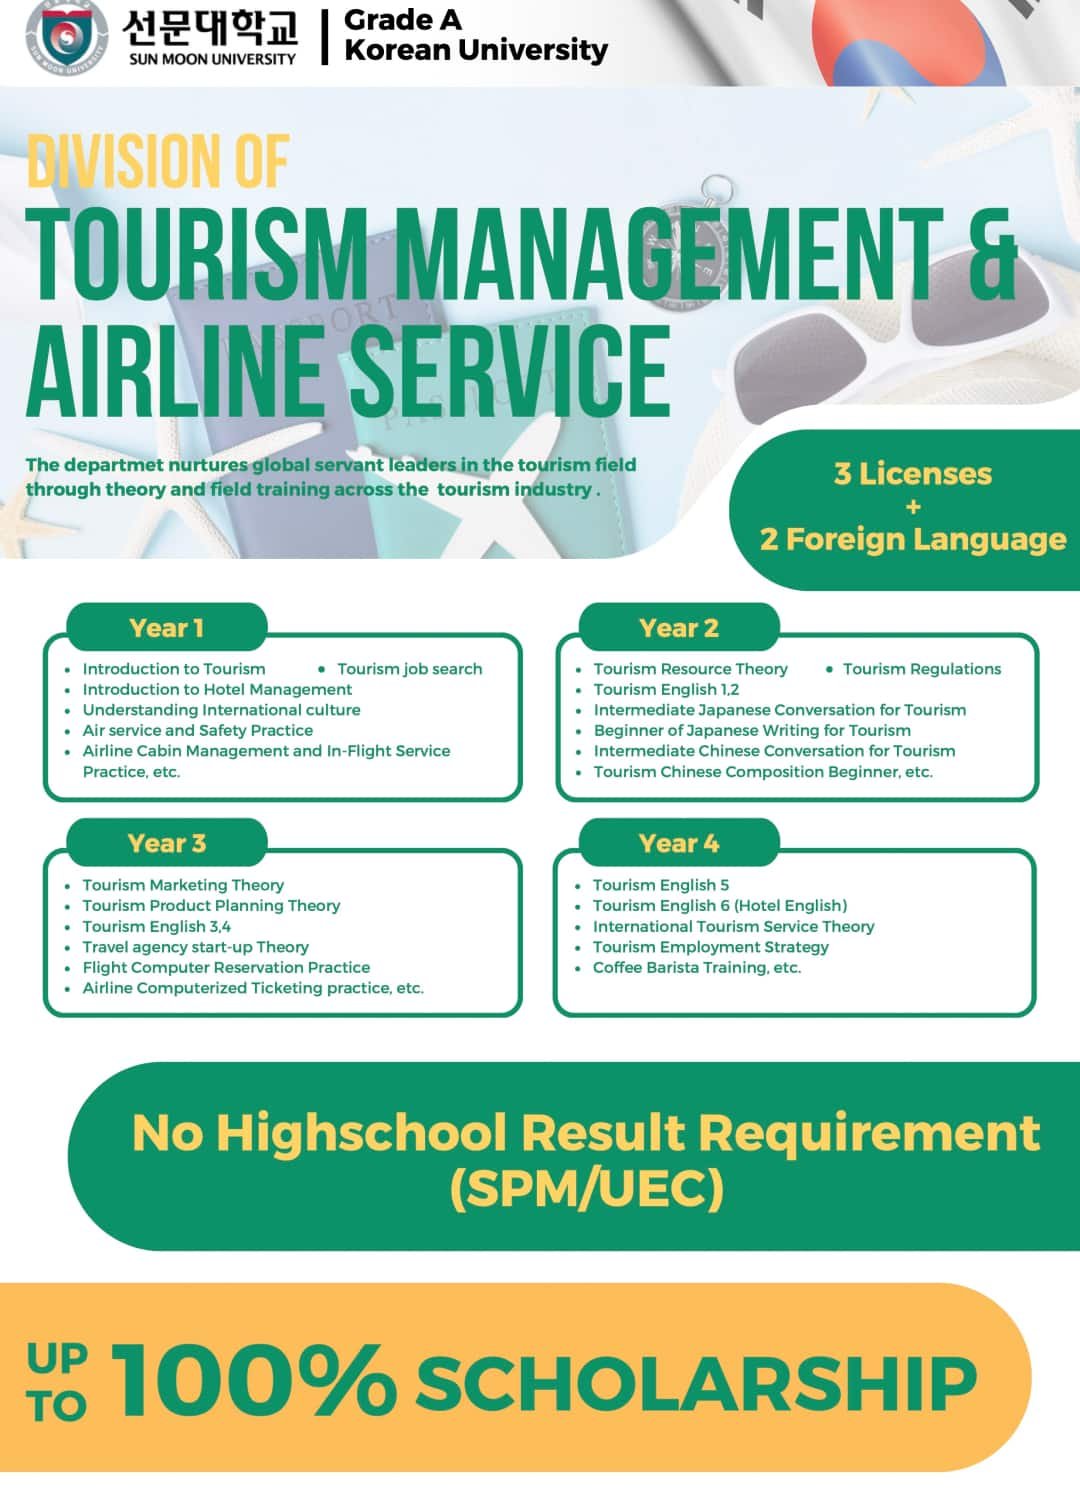  Tourism Management _ Airline Service